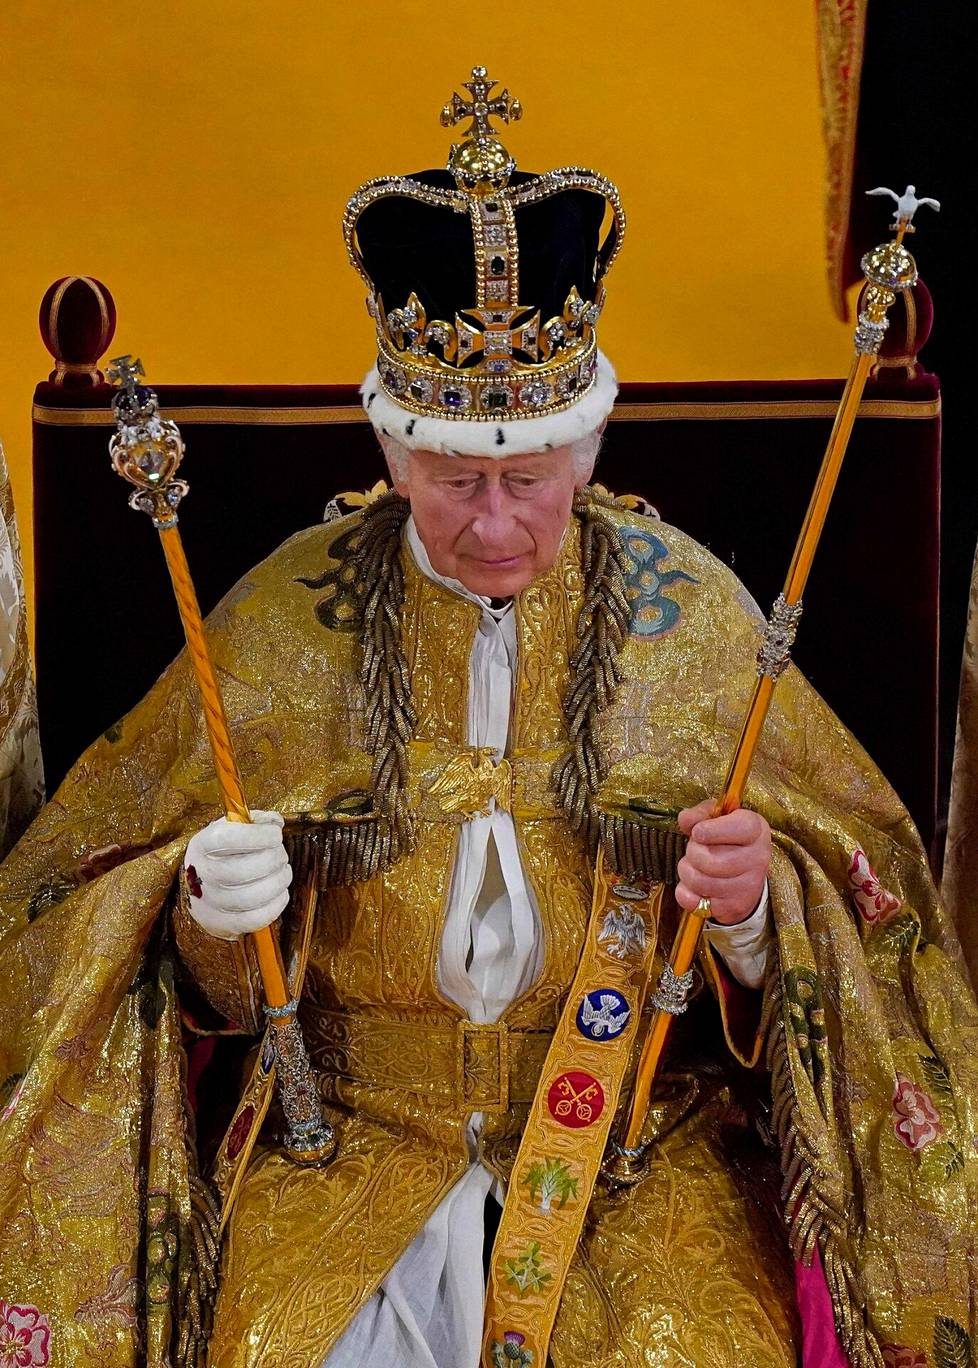 Kuningas Charles III Pyhän Edvardin kruunu päässään.